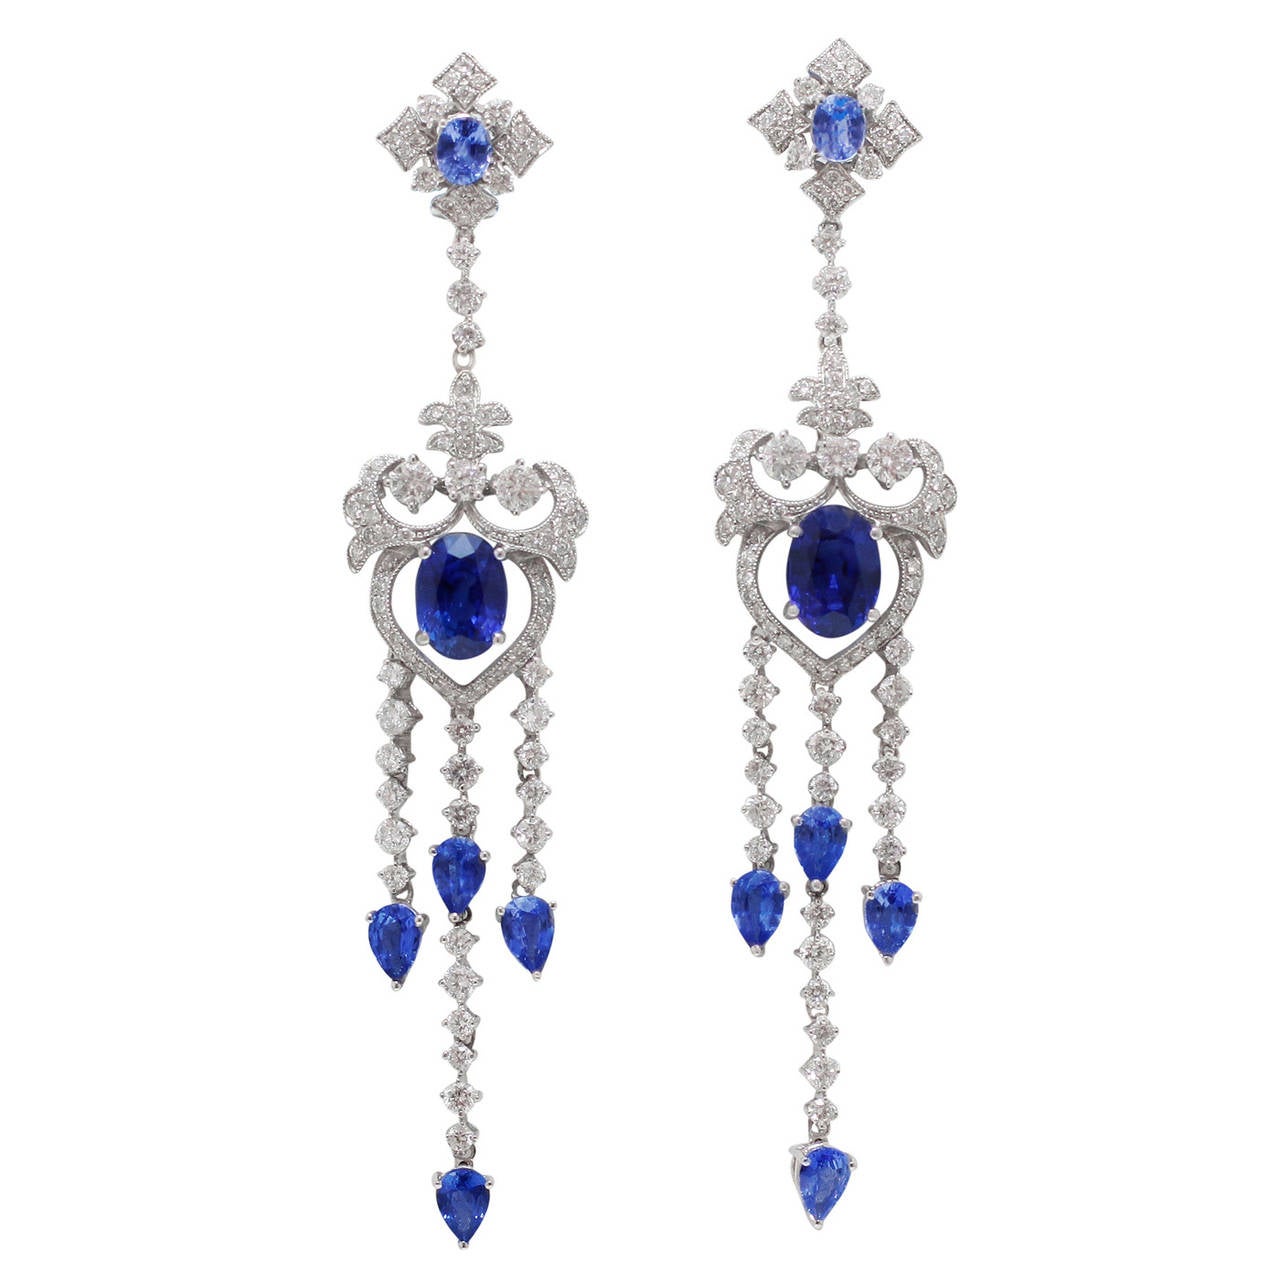 Burdeen's Jewelry Elegant and Ornate Sapphire Diamond Chandelier Earrings For Sale